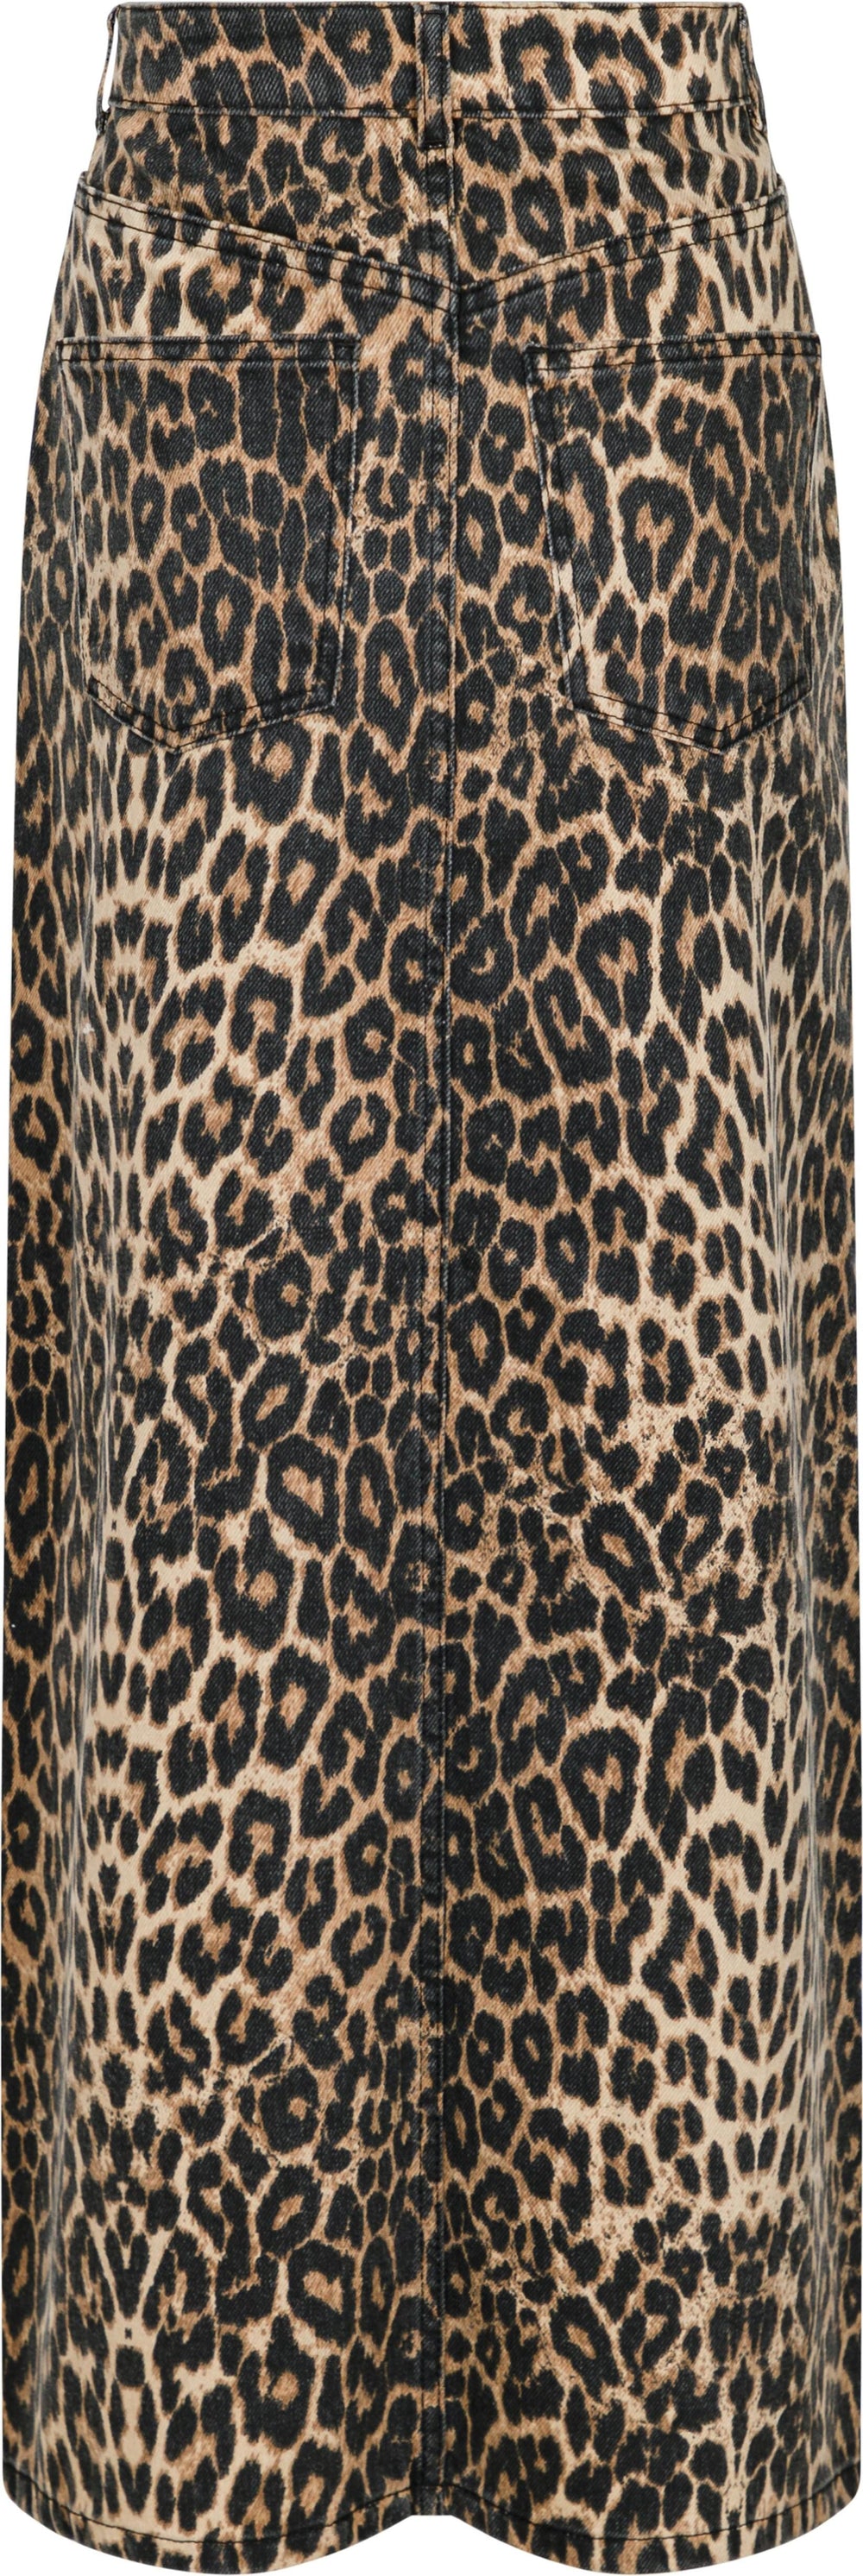 Neo Noir - Frankie Leopard Skirt - Leopard